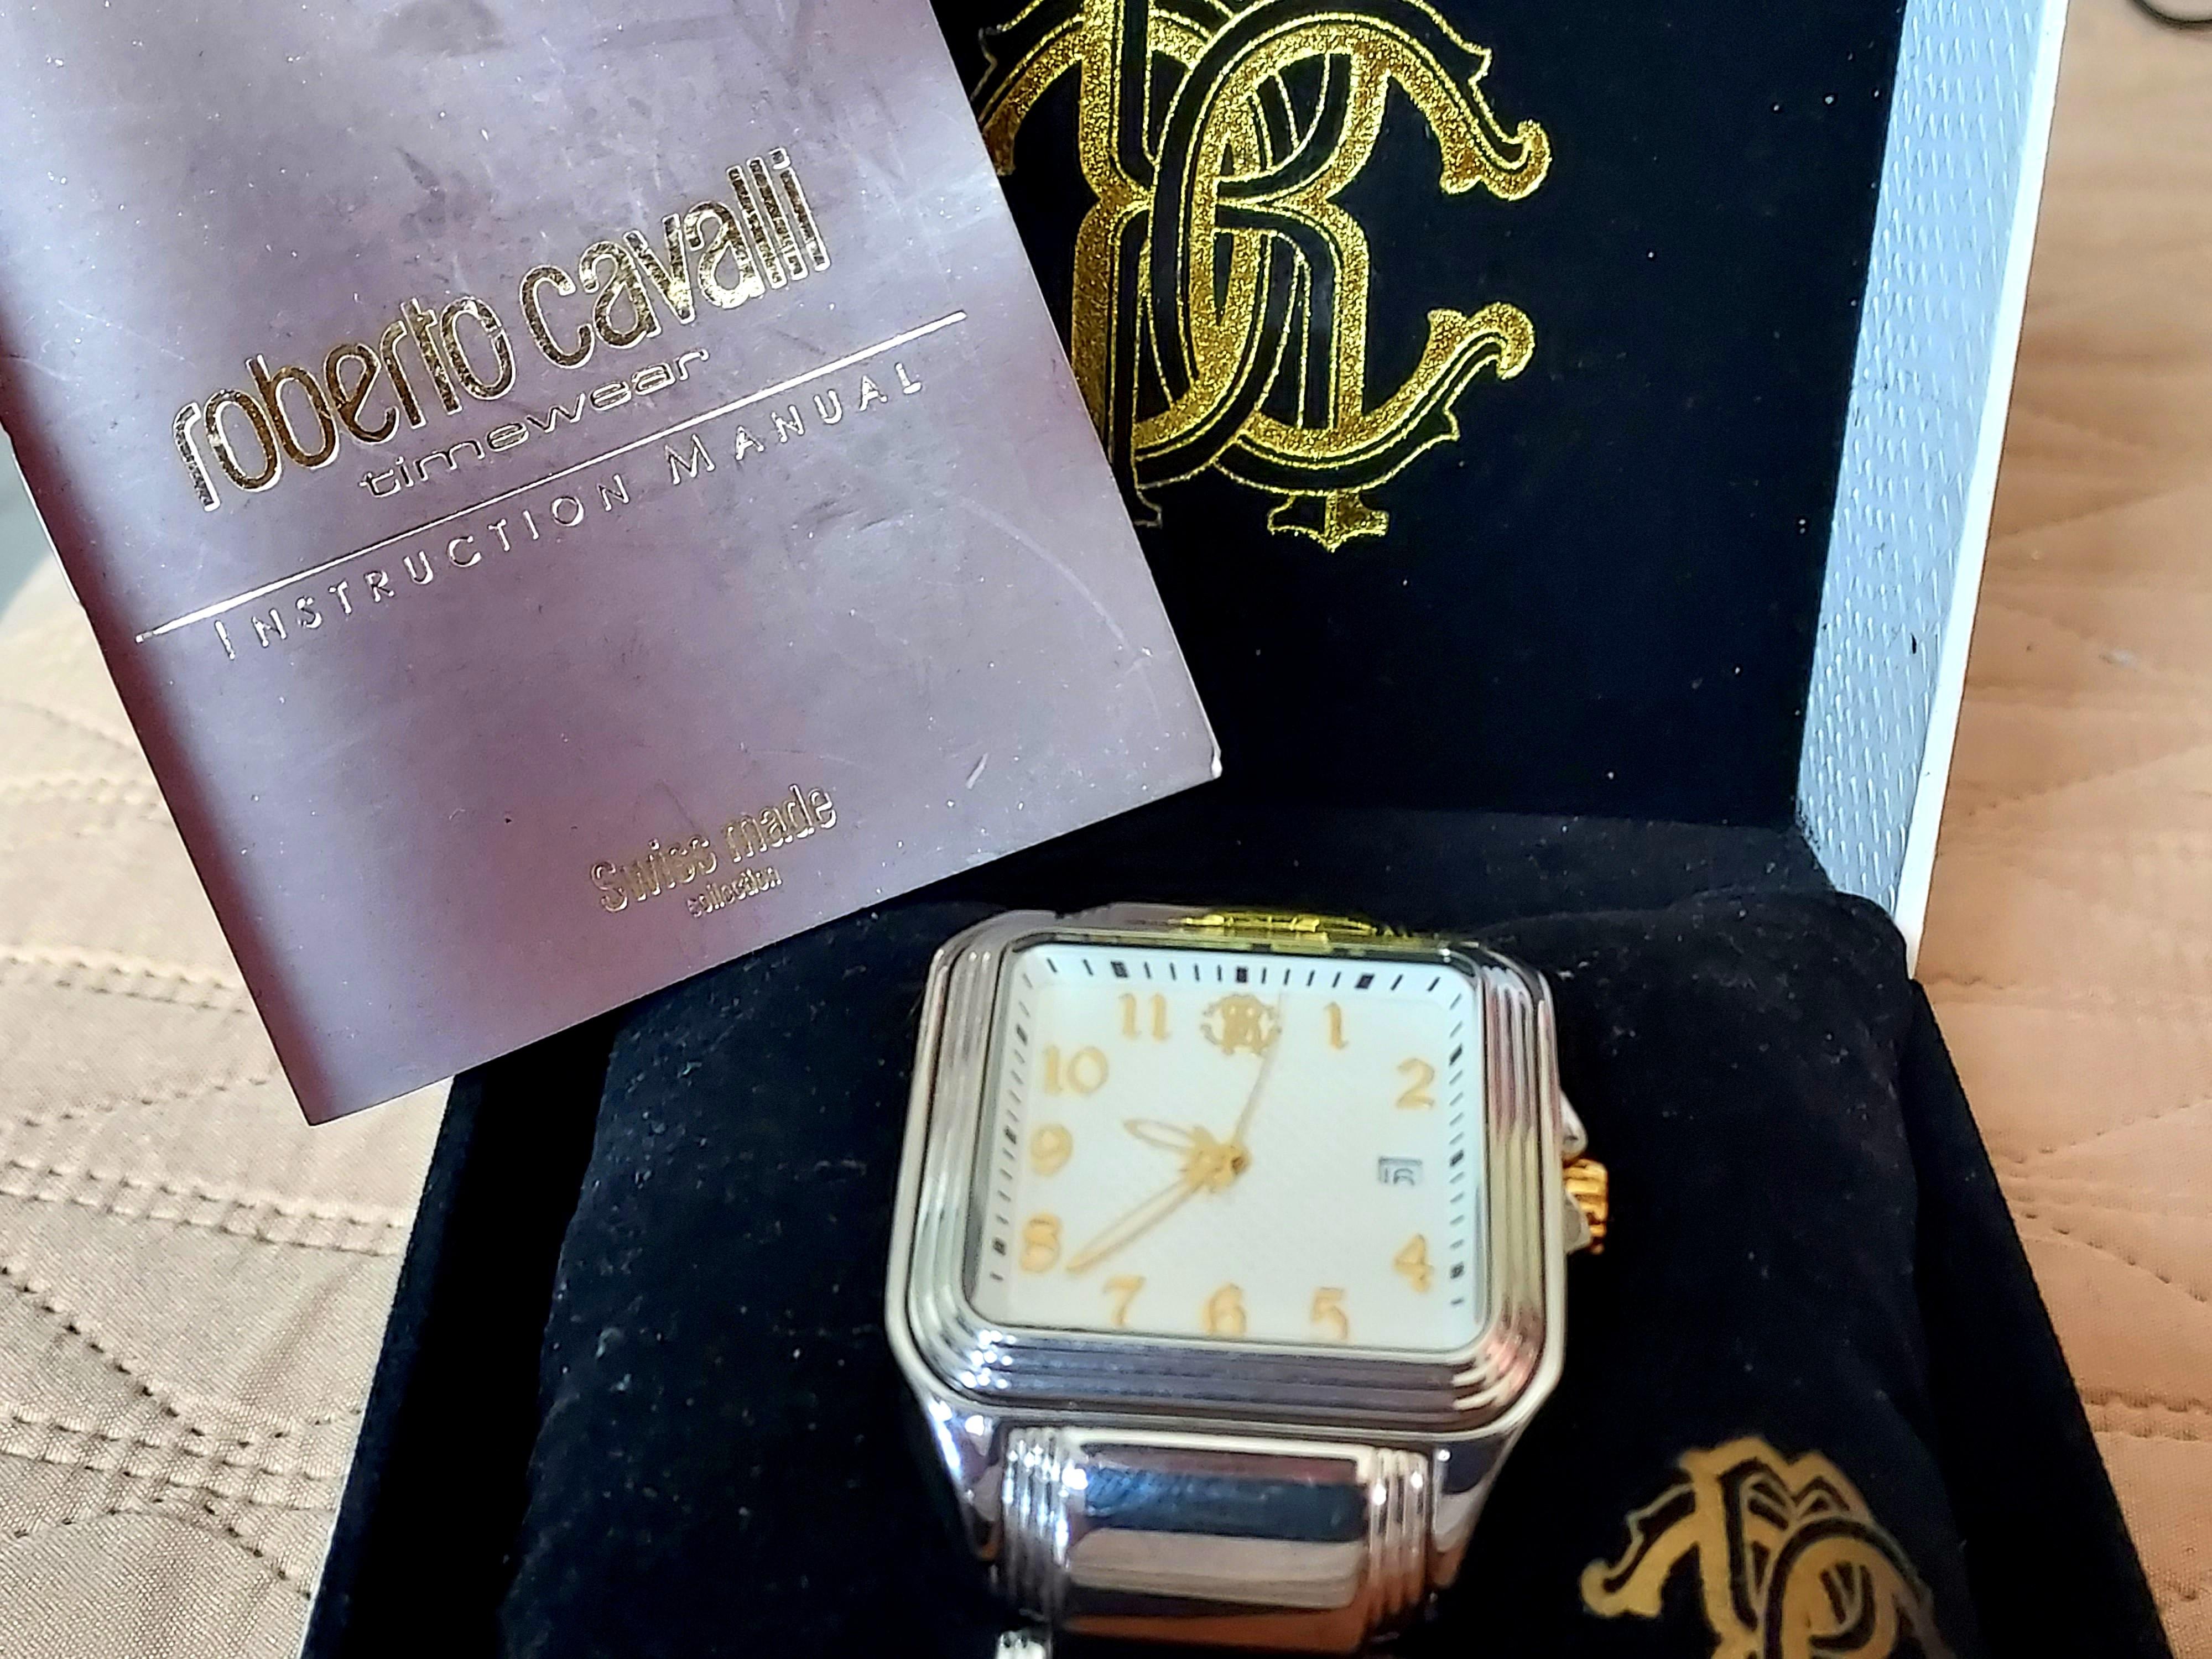 オリジナルデザイン手作り商品 腕時計 ロベルトカヴァッリ New Ladies